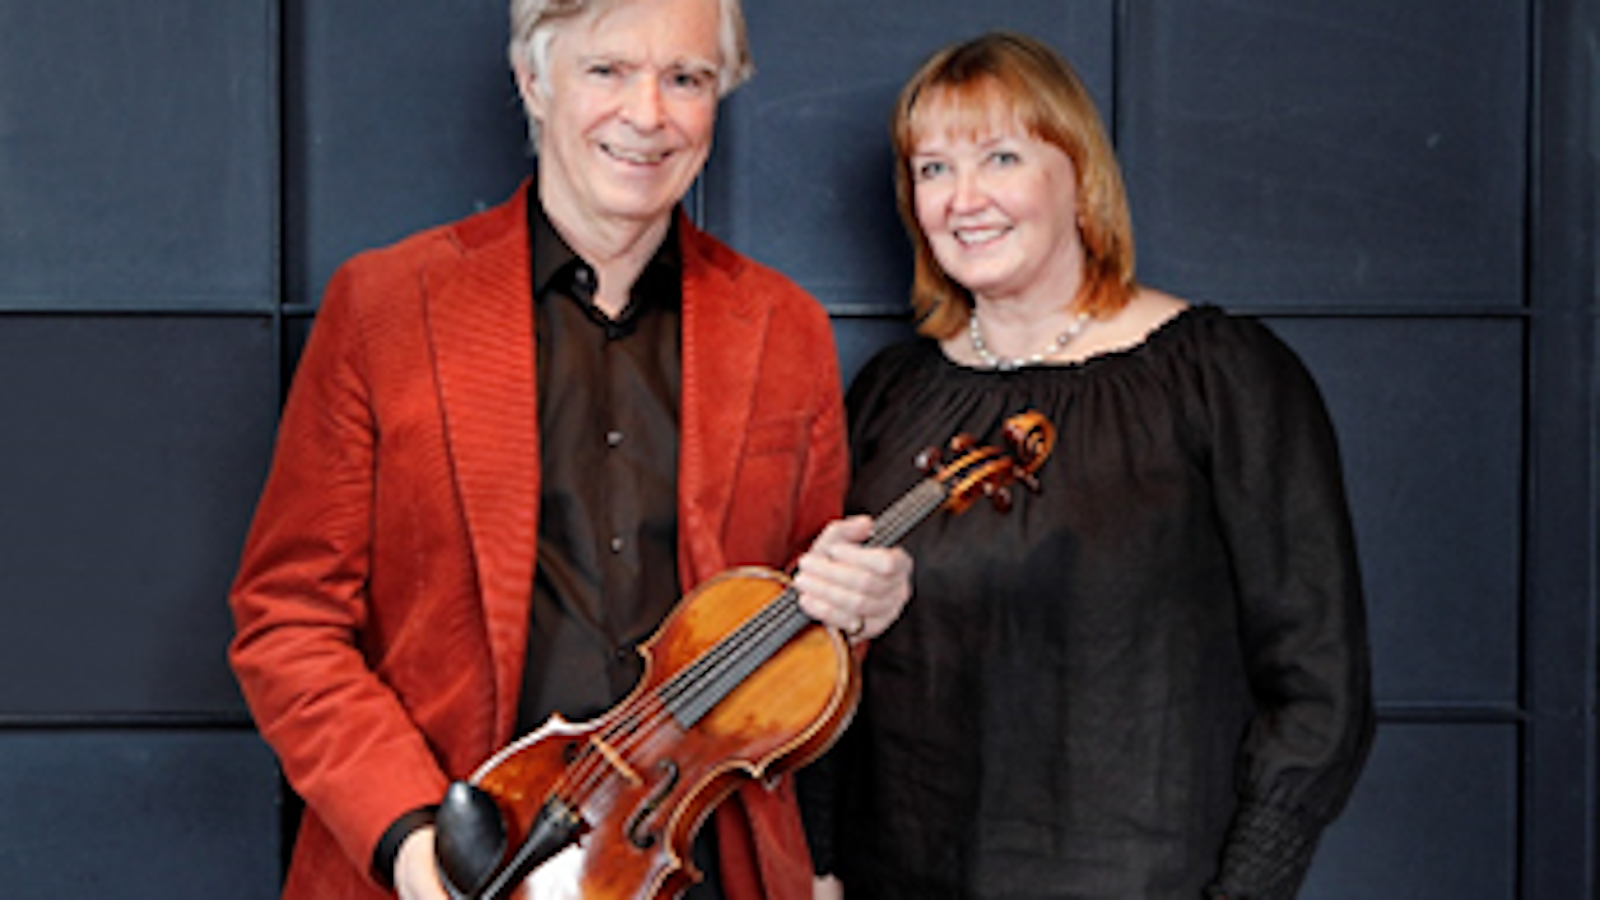 Kuvassa ovat Hannele ja Henrik von Wendt ja Henrik von Wendtin kädessä on Montagnana-viulu.